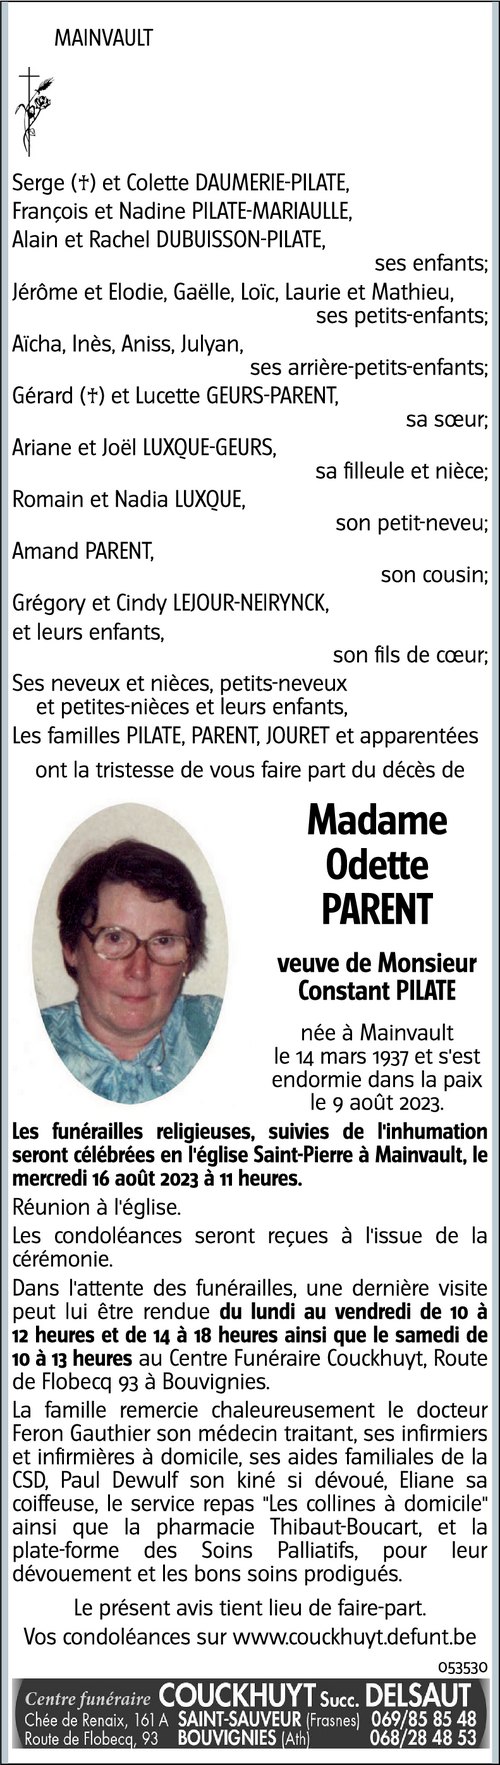 Odette Parent